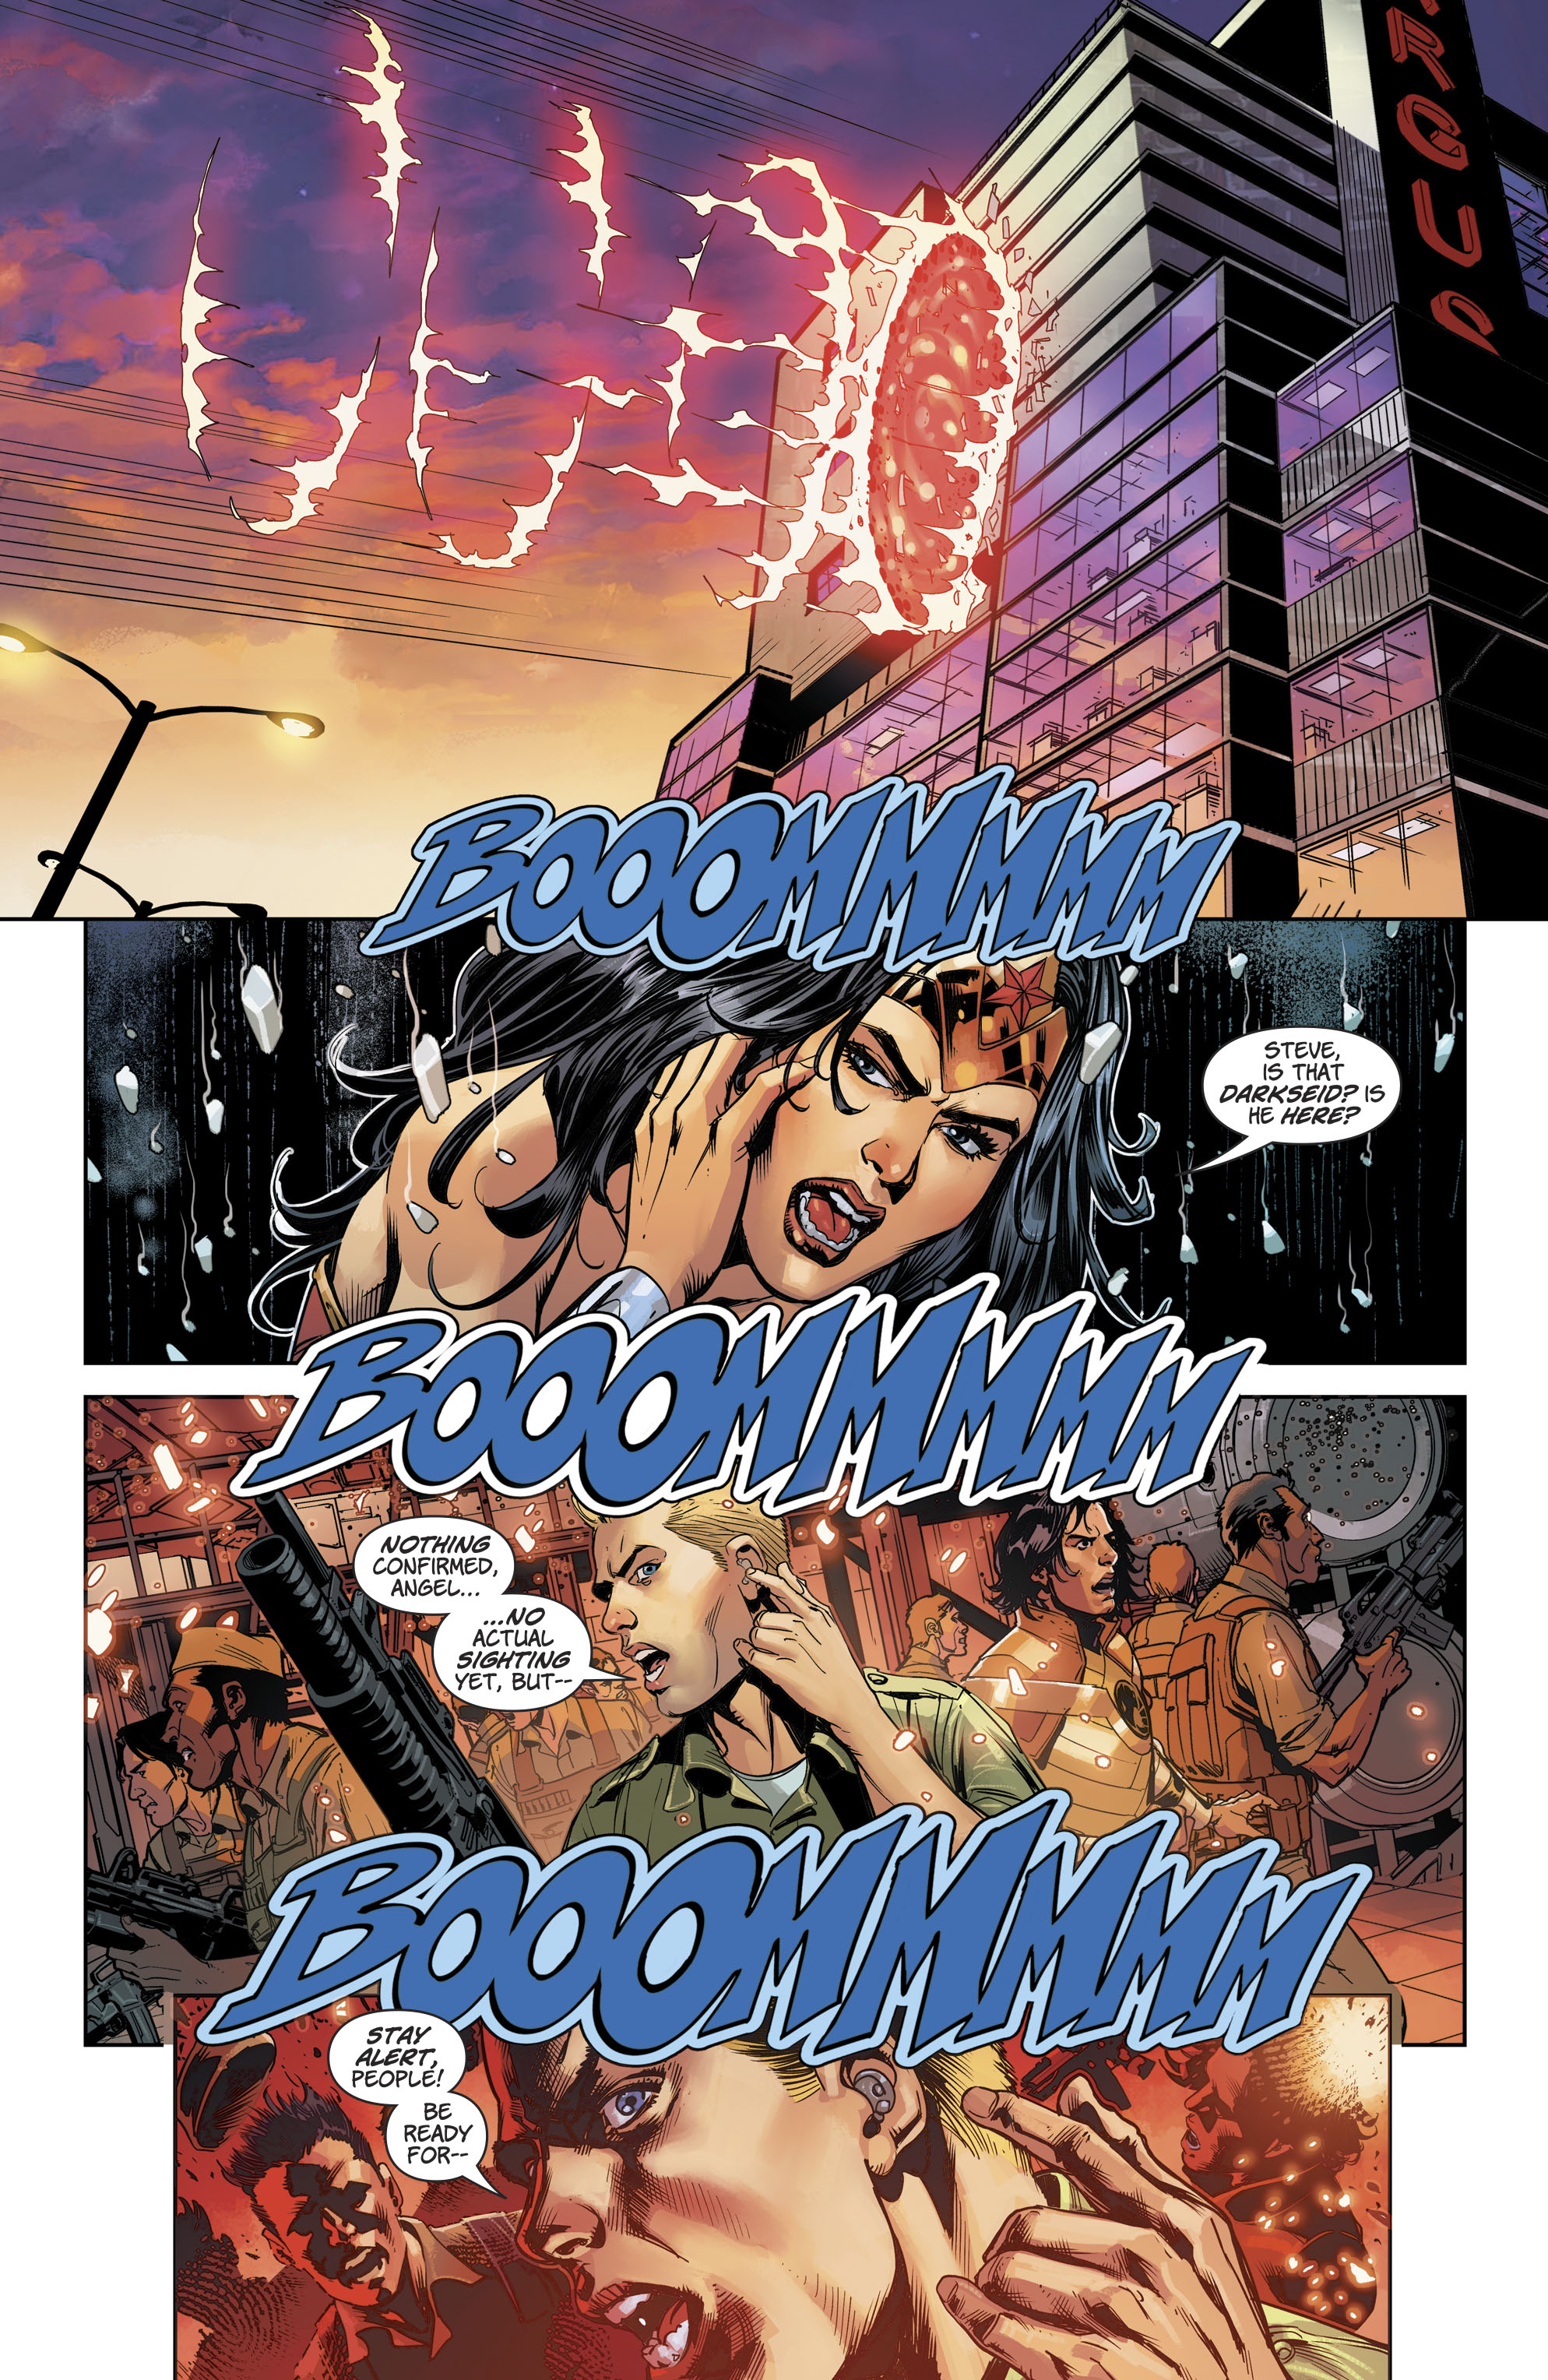 Wonder Woman 2016 043 018